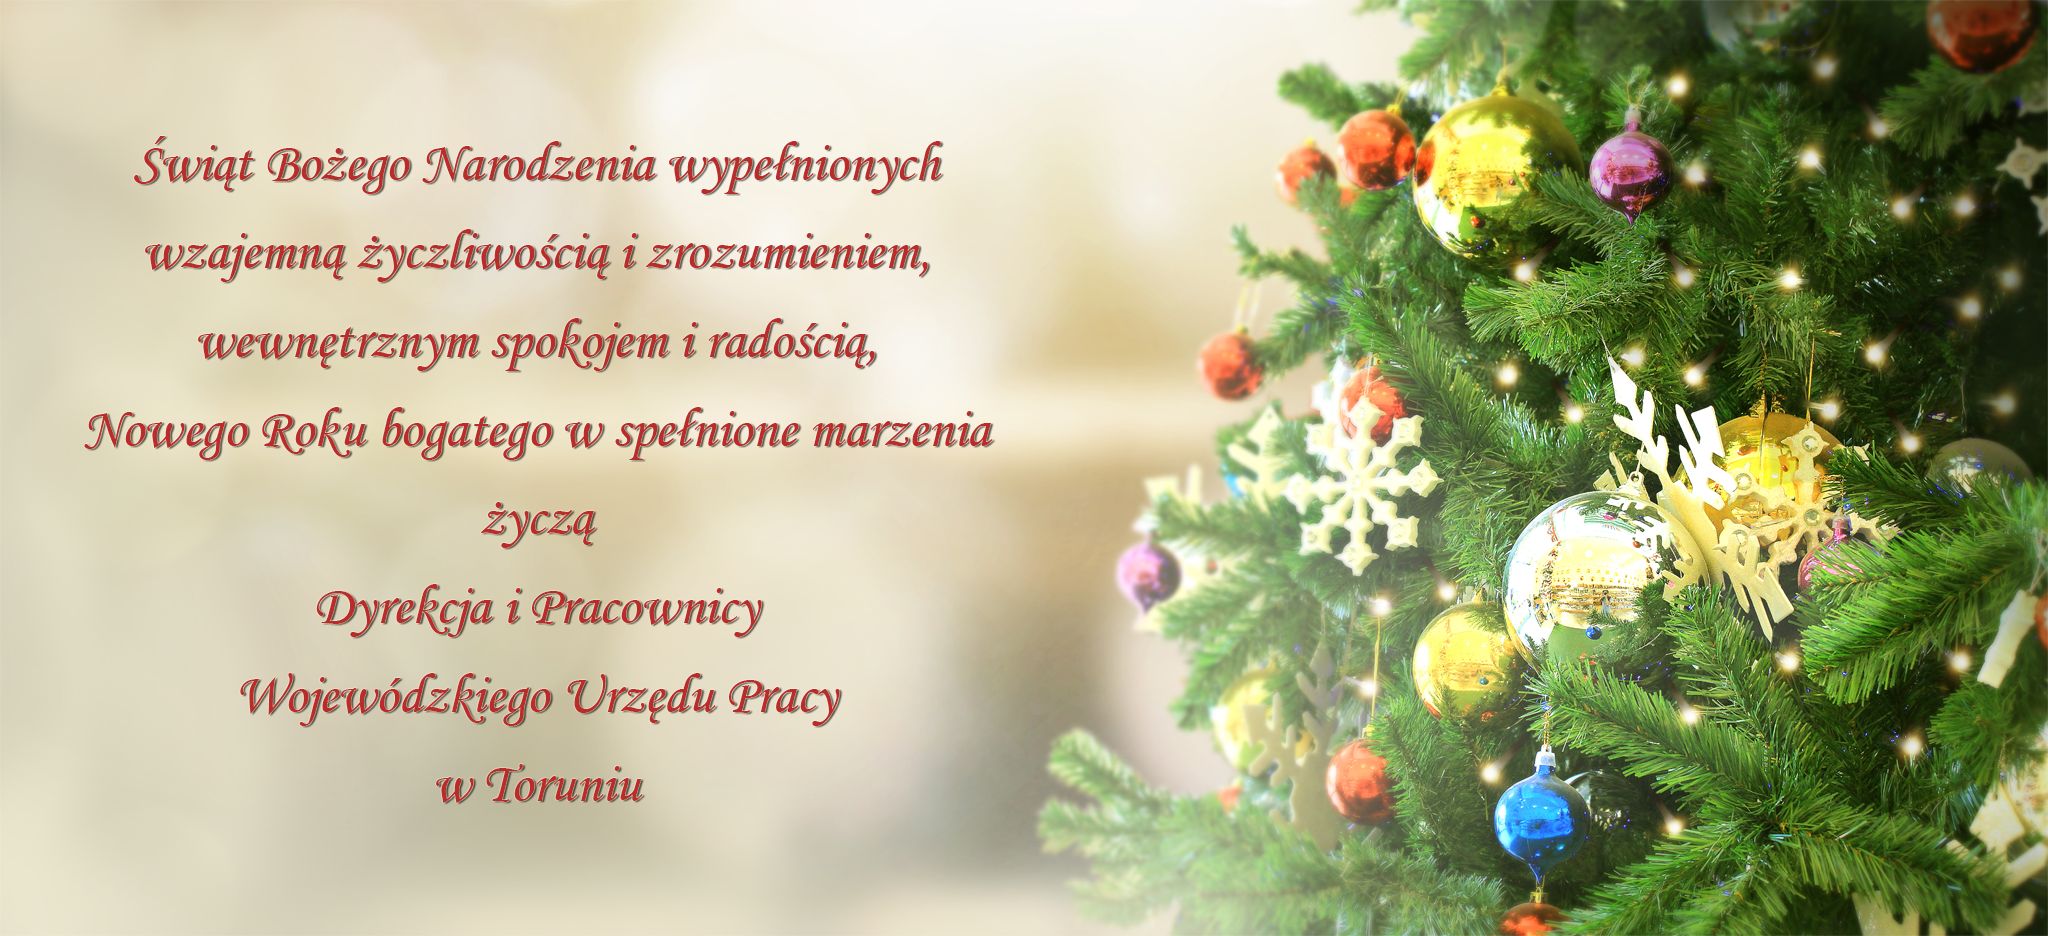 Świąt Bożego Narodzenia wypełnionych wzajemną życzliwością i zrozumieniem, wewnętrznym spokojem i radością, Nowego Roku bogatego w spełnione marzenia życzą Dyrekcja i Pracownicy Wojewódzkiego Urzędu Pracy w Toruniu w Toruniu